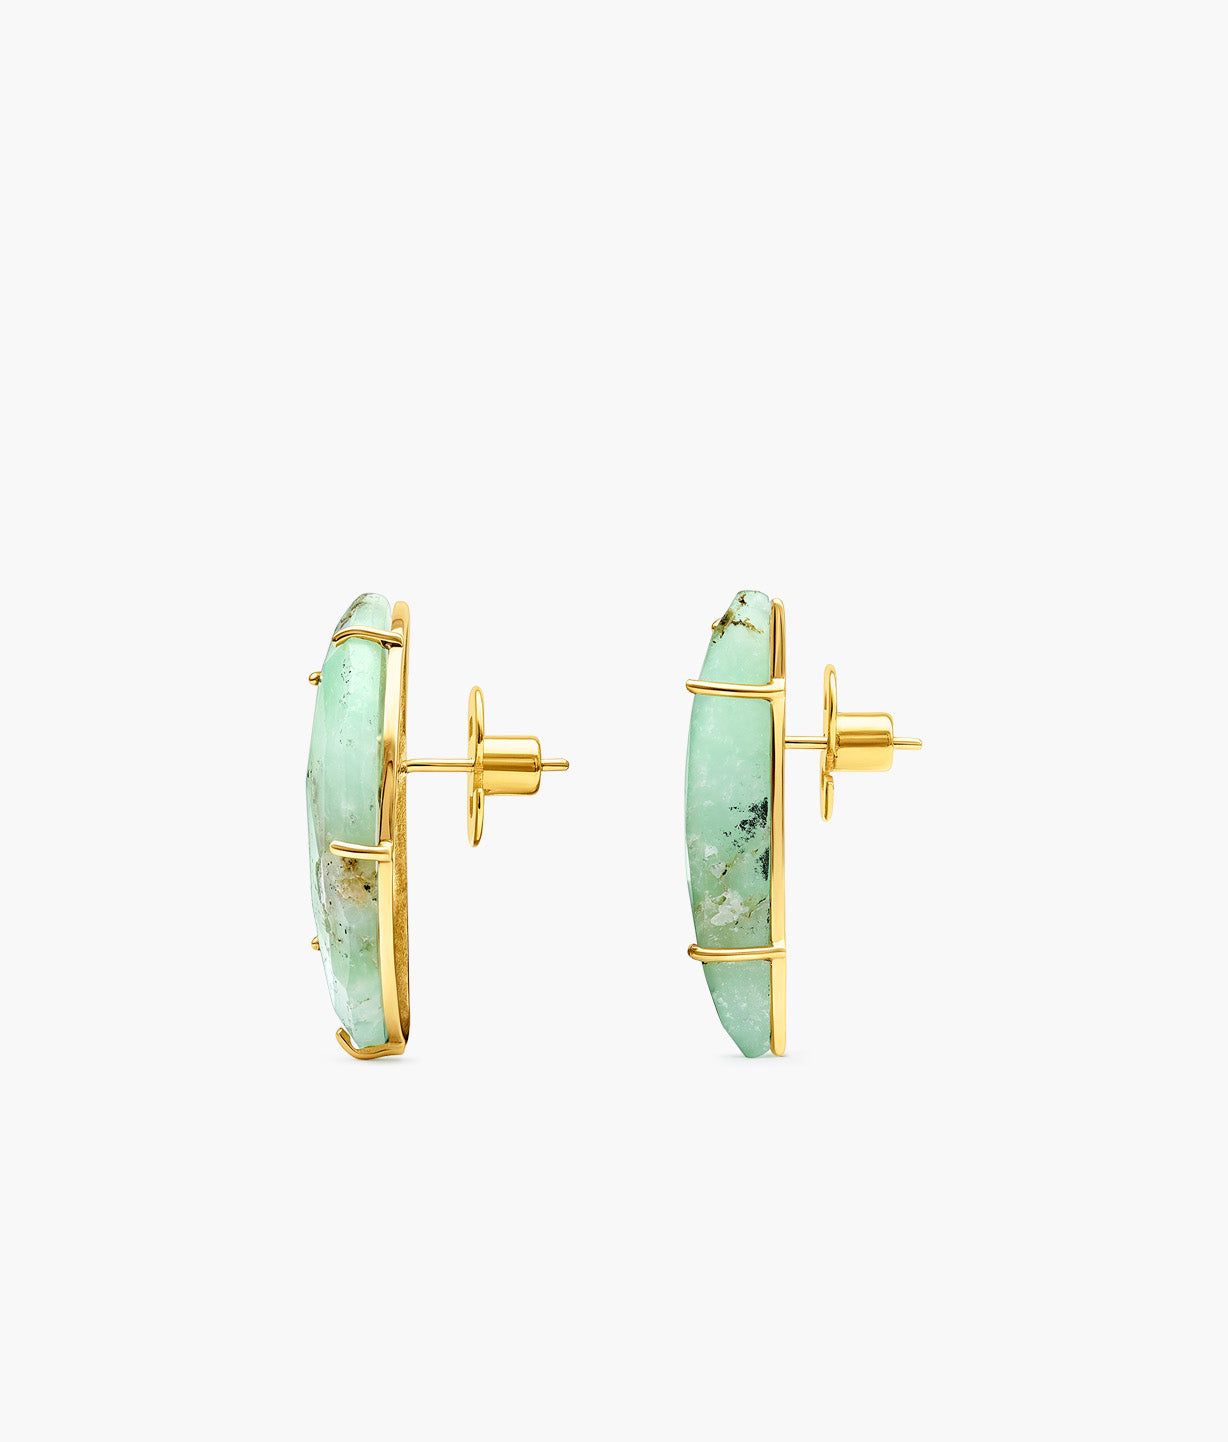 Unique Gems Aquamarine Earrings